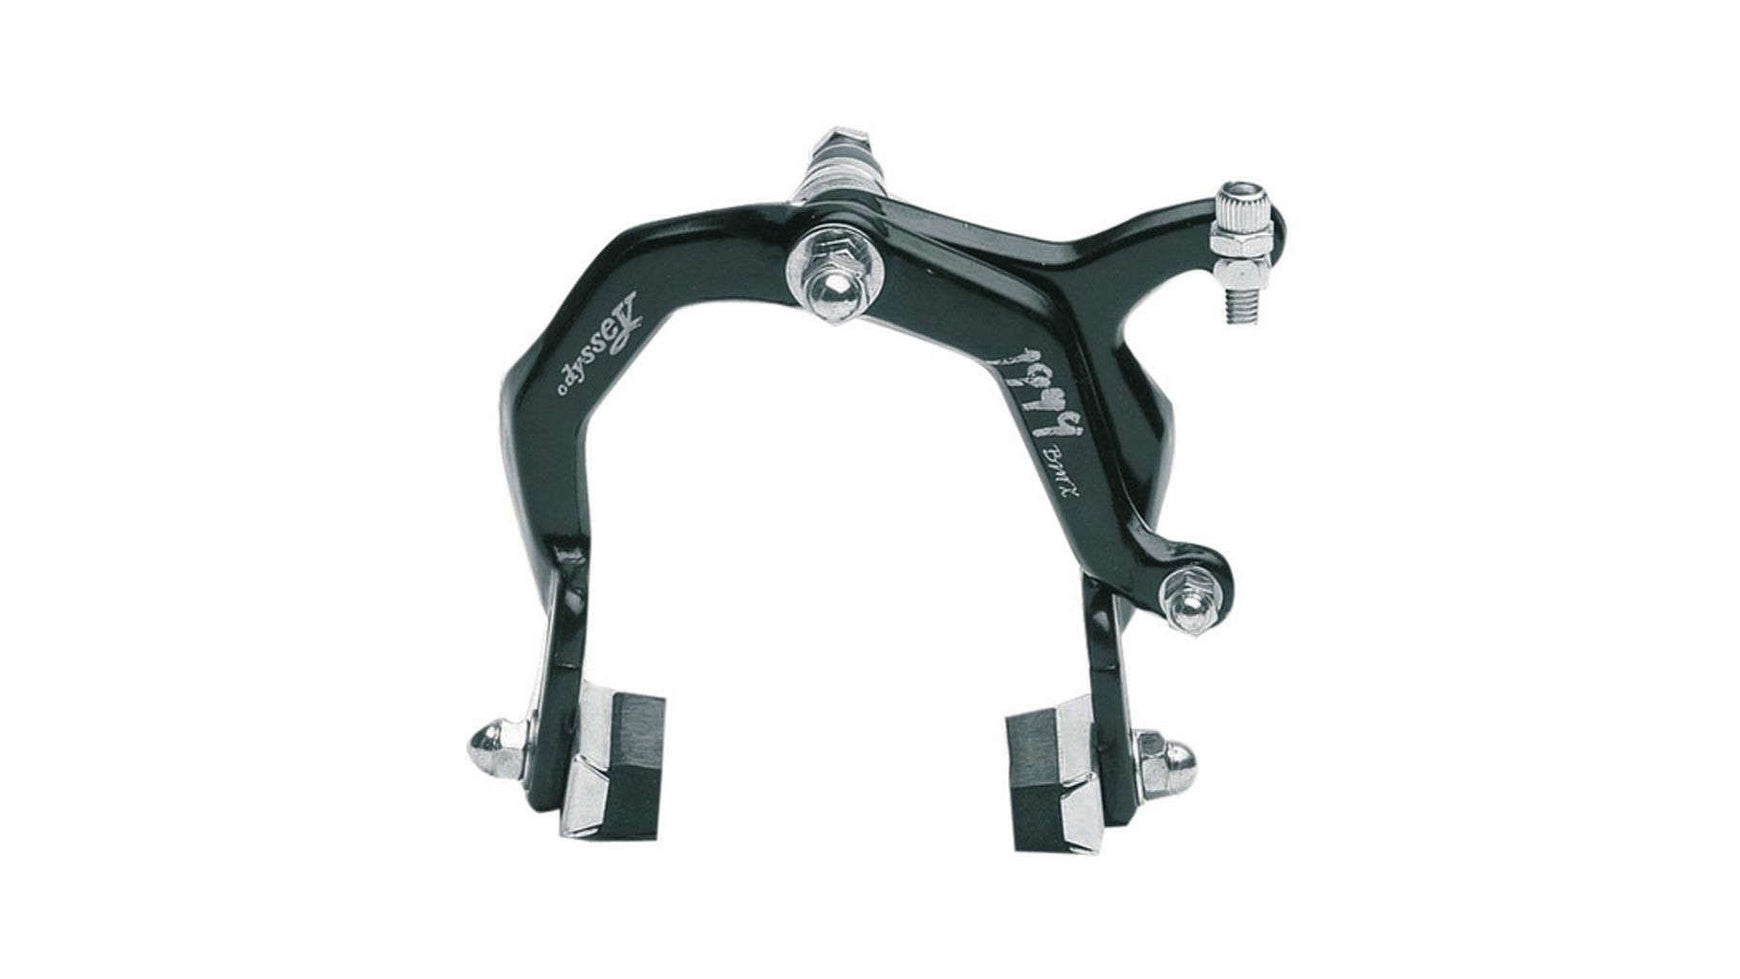 SST Oryg BMX Bremszug Fahrrad Set Brems-Bowdenzugset BMX Freestyle